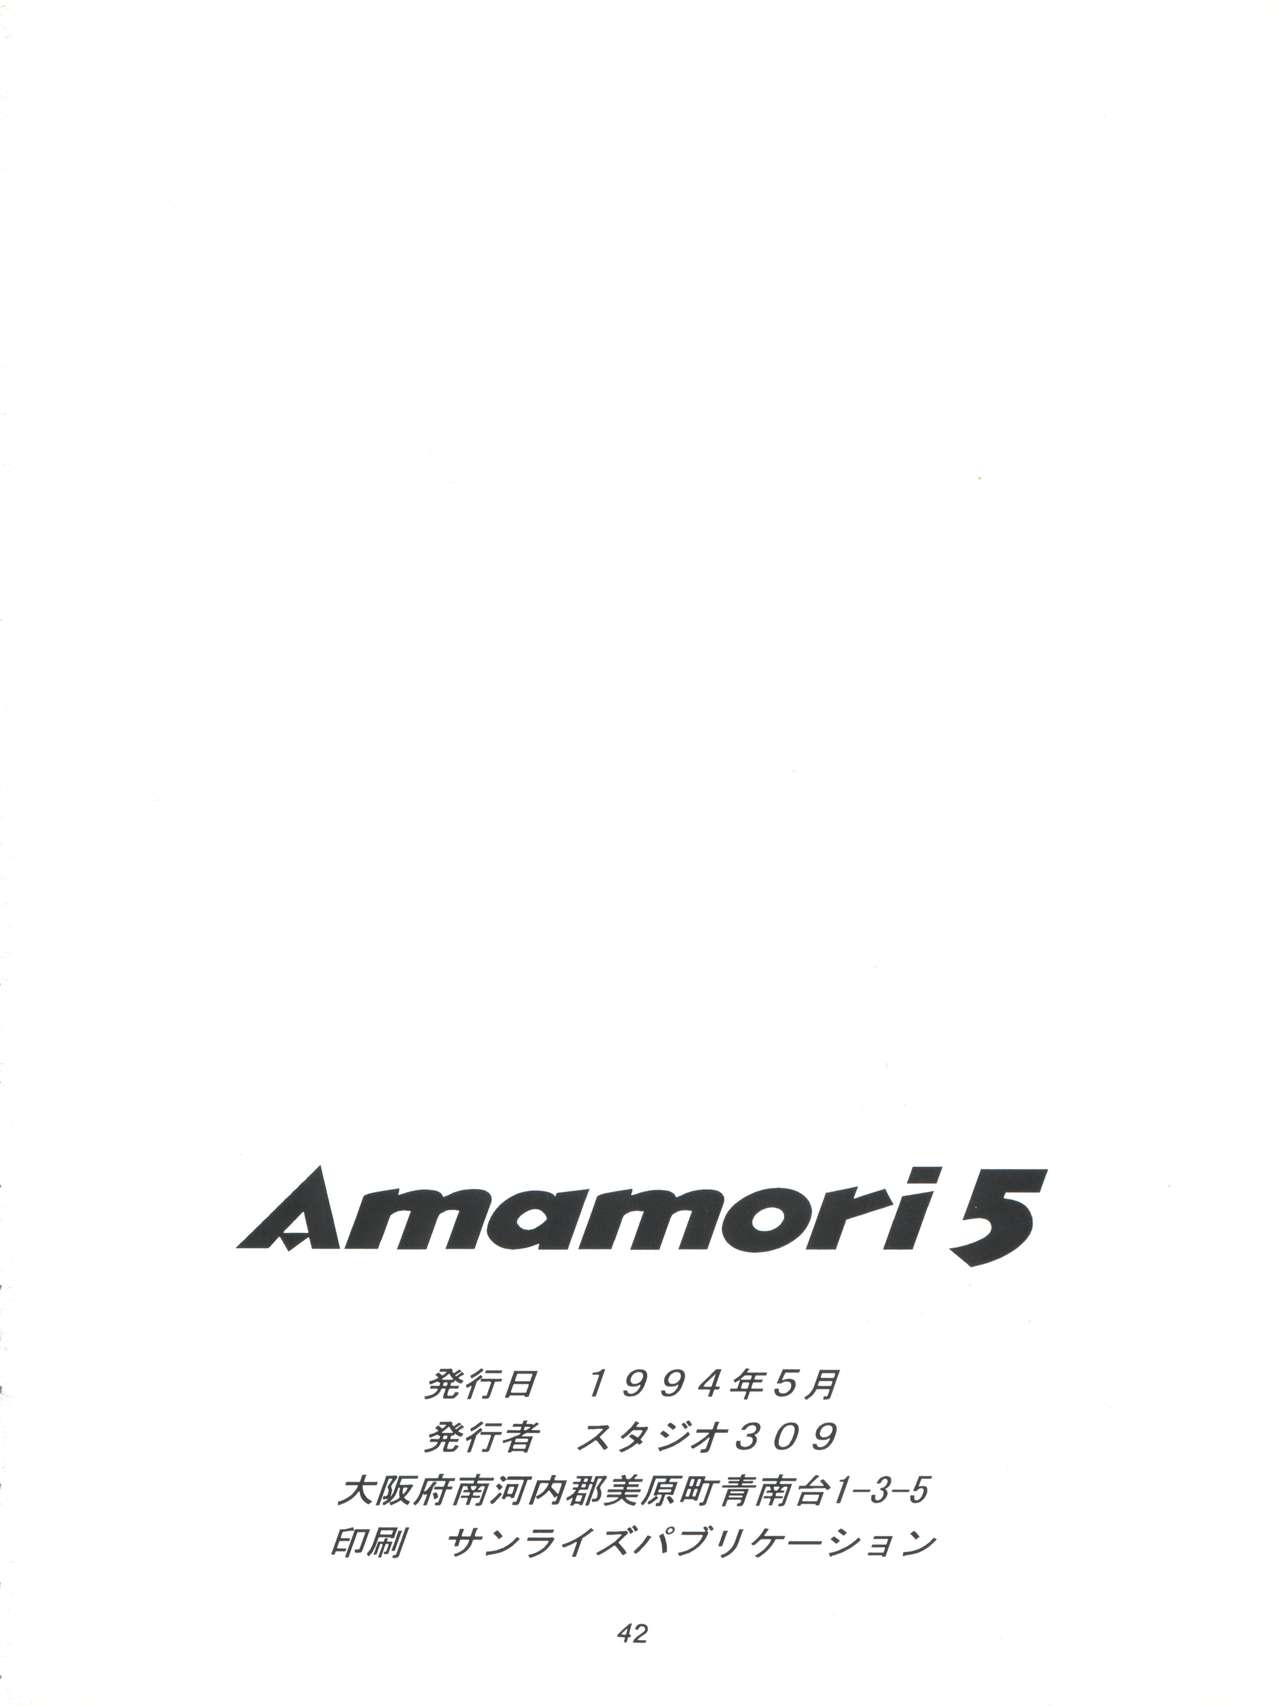 [Studio 309 (あらきあきら、ほりもとあきら)] Amamori 5 (Vガンダム、機動戦士ガンダム)